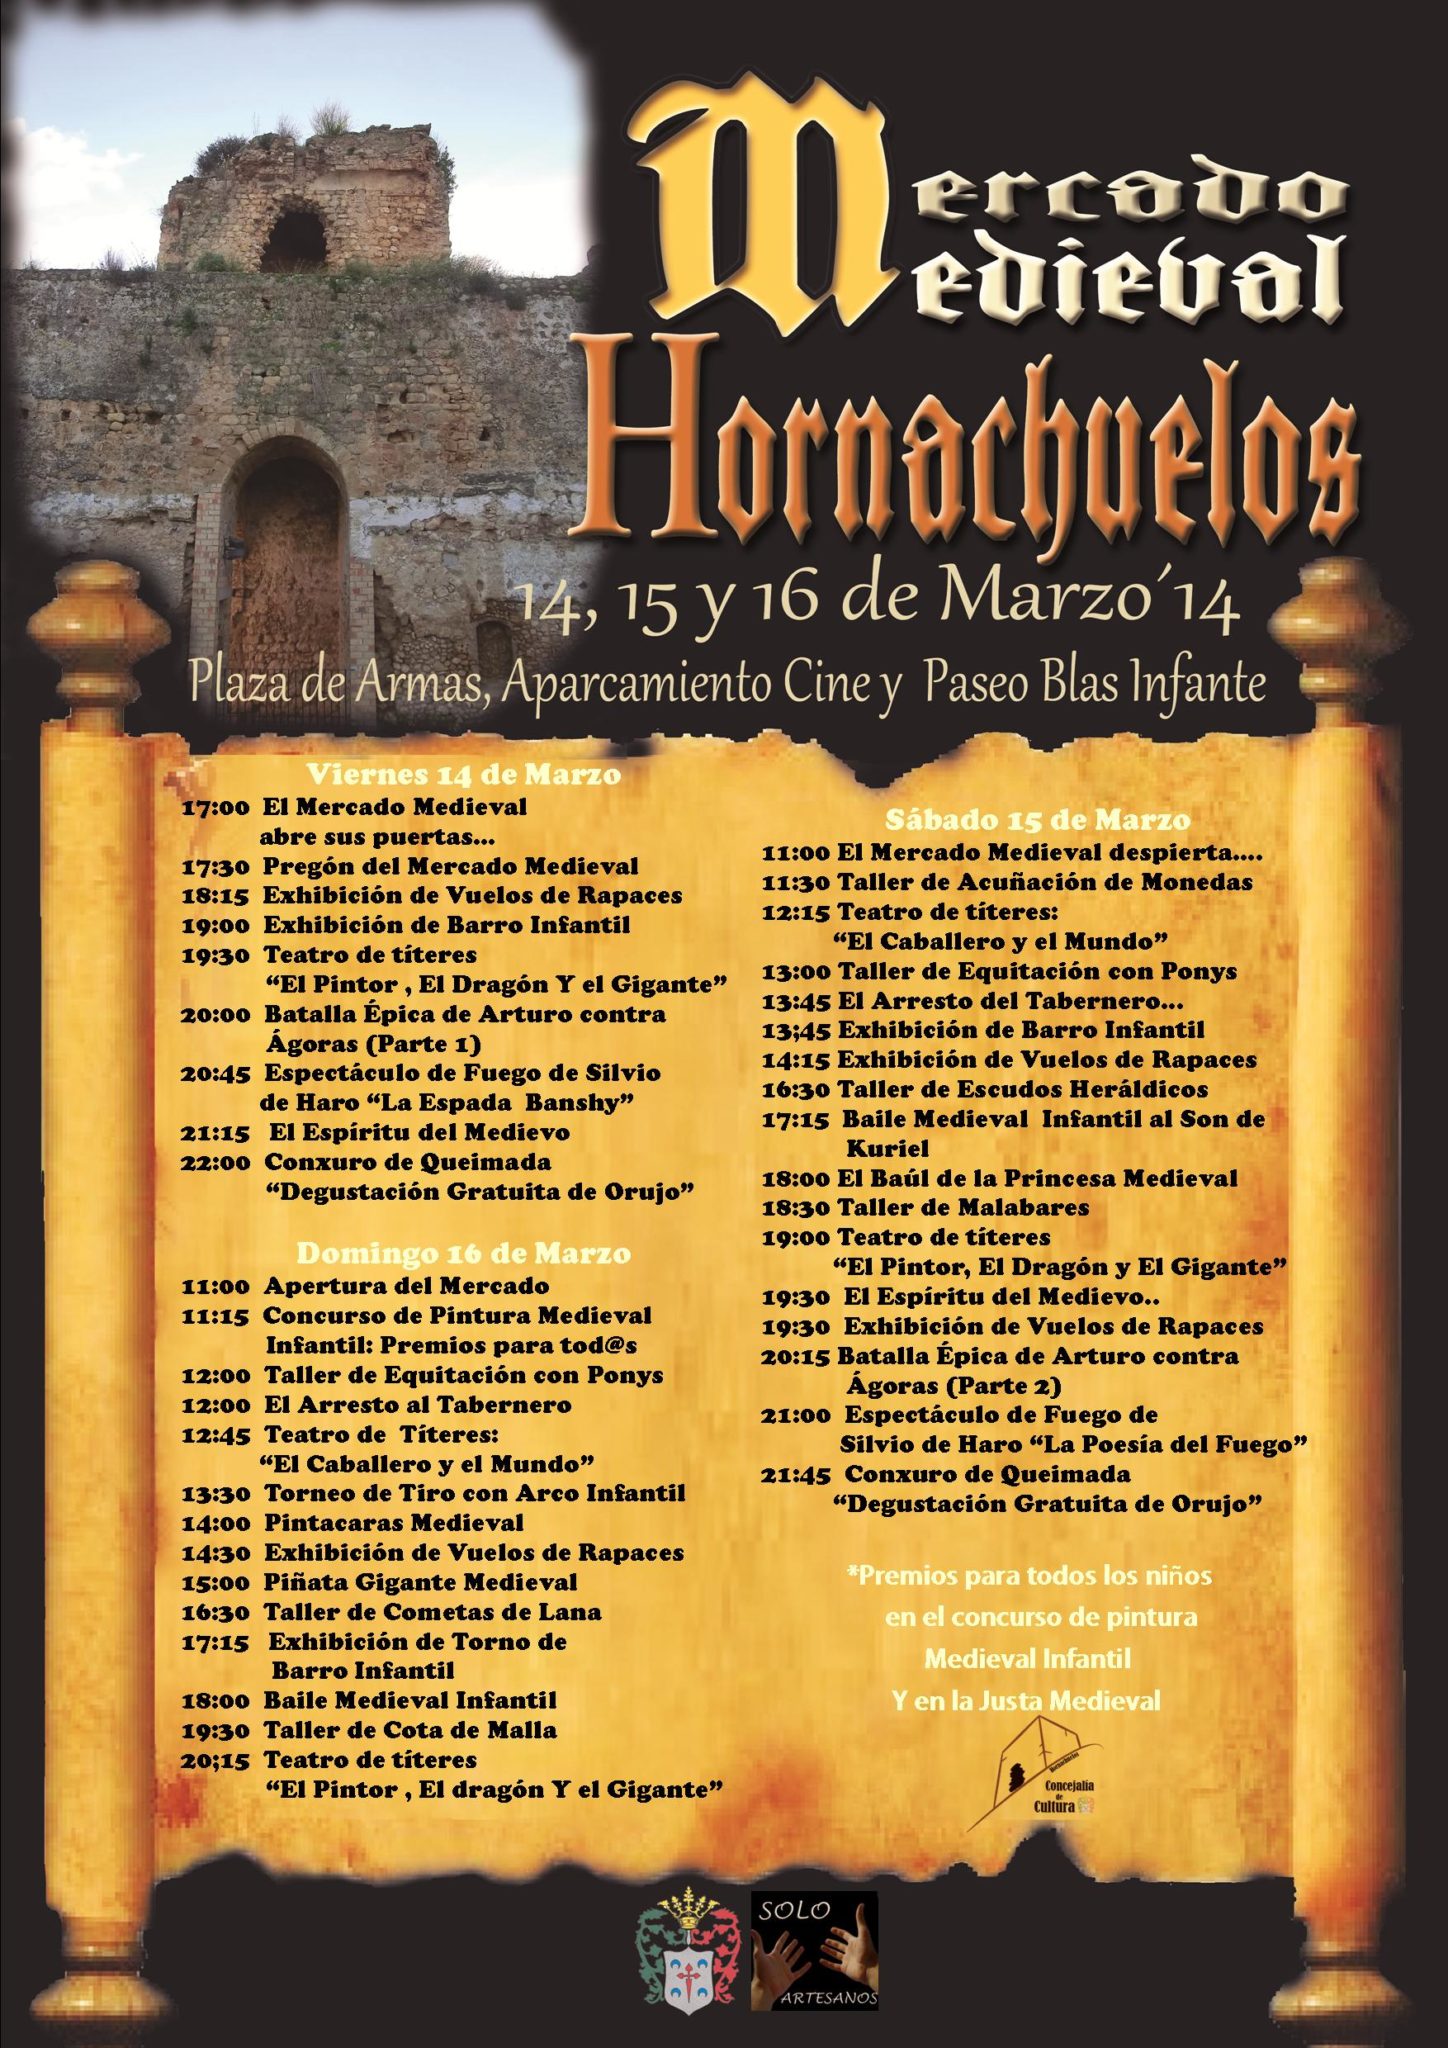 Cartel de Hornachuelos, Cordoba